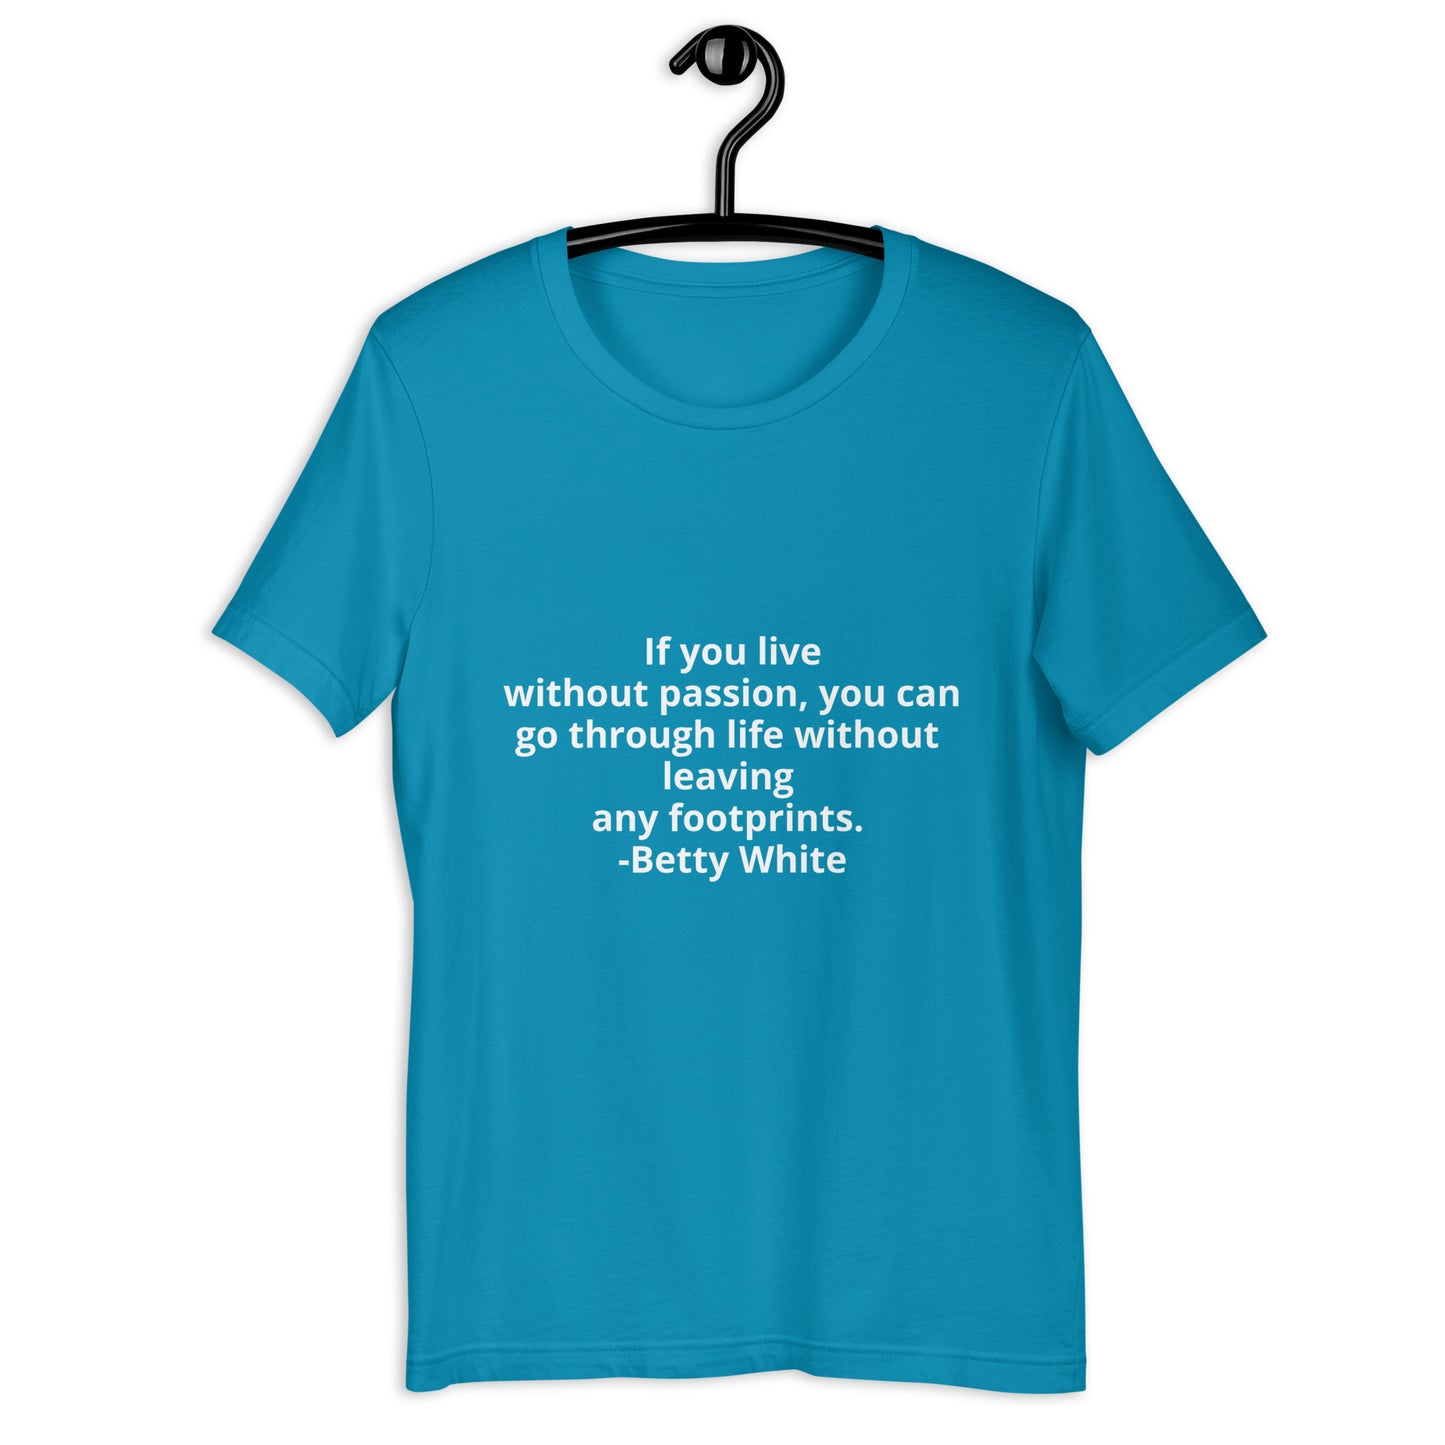 Betty White quote Unisex t-shirt